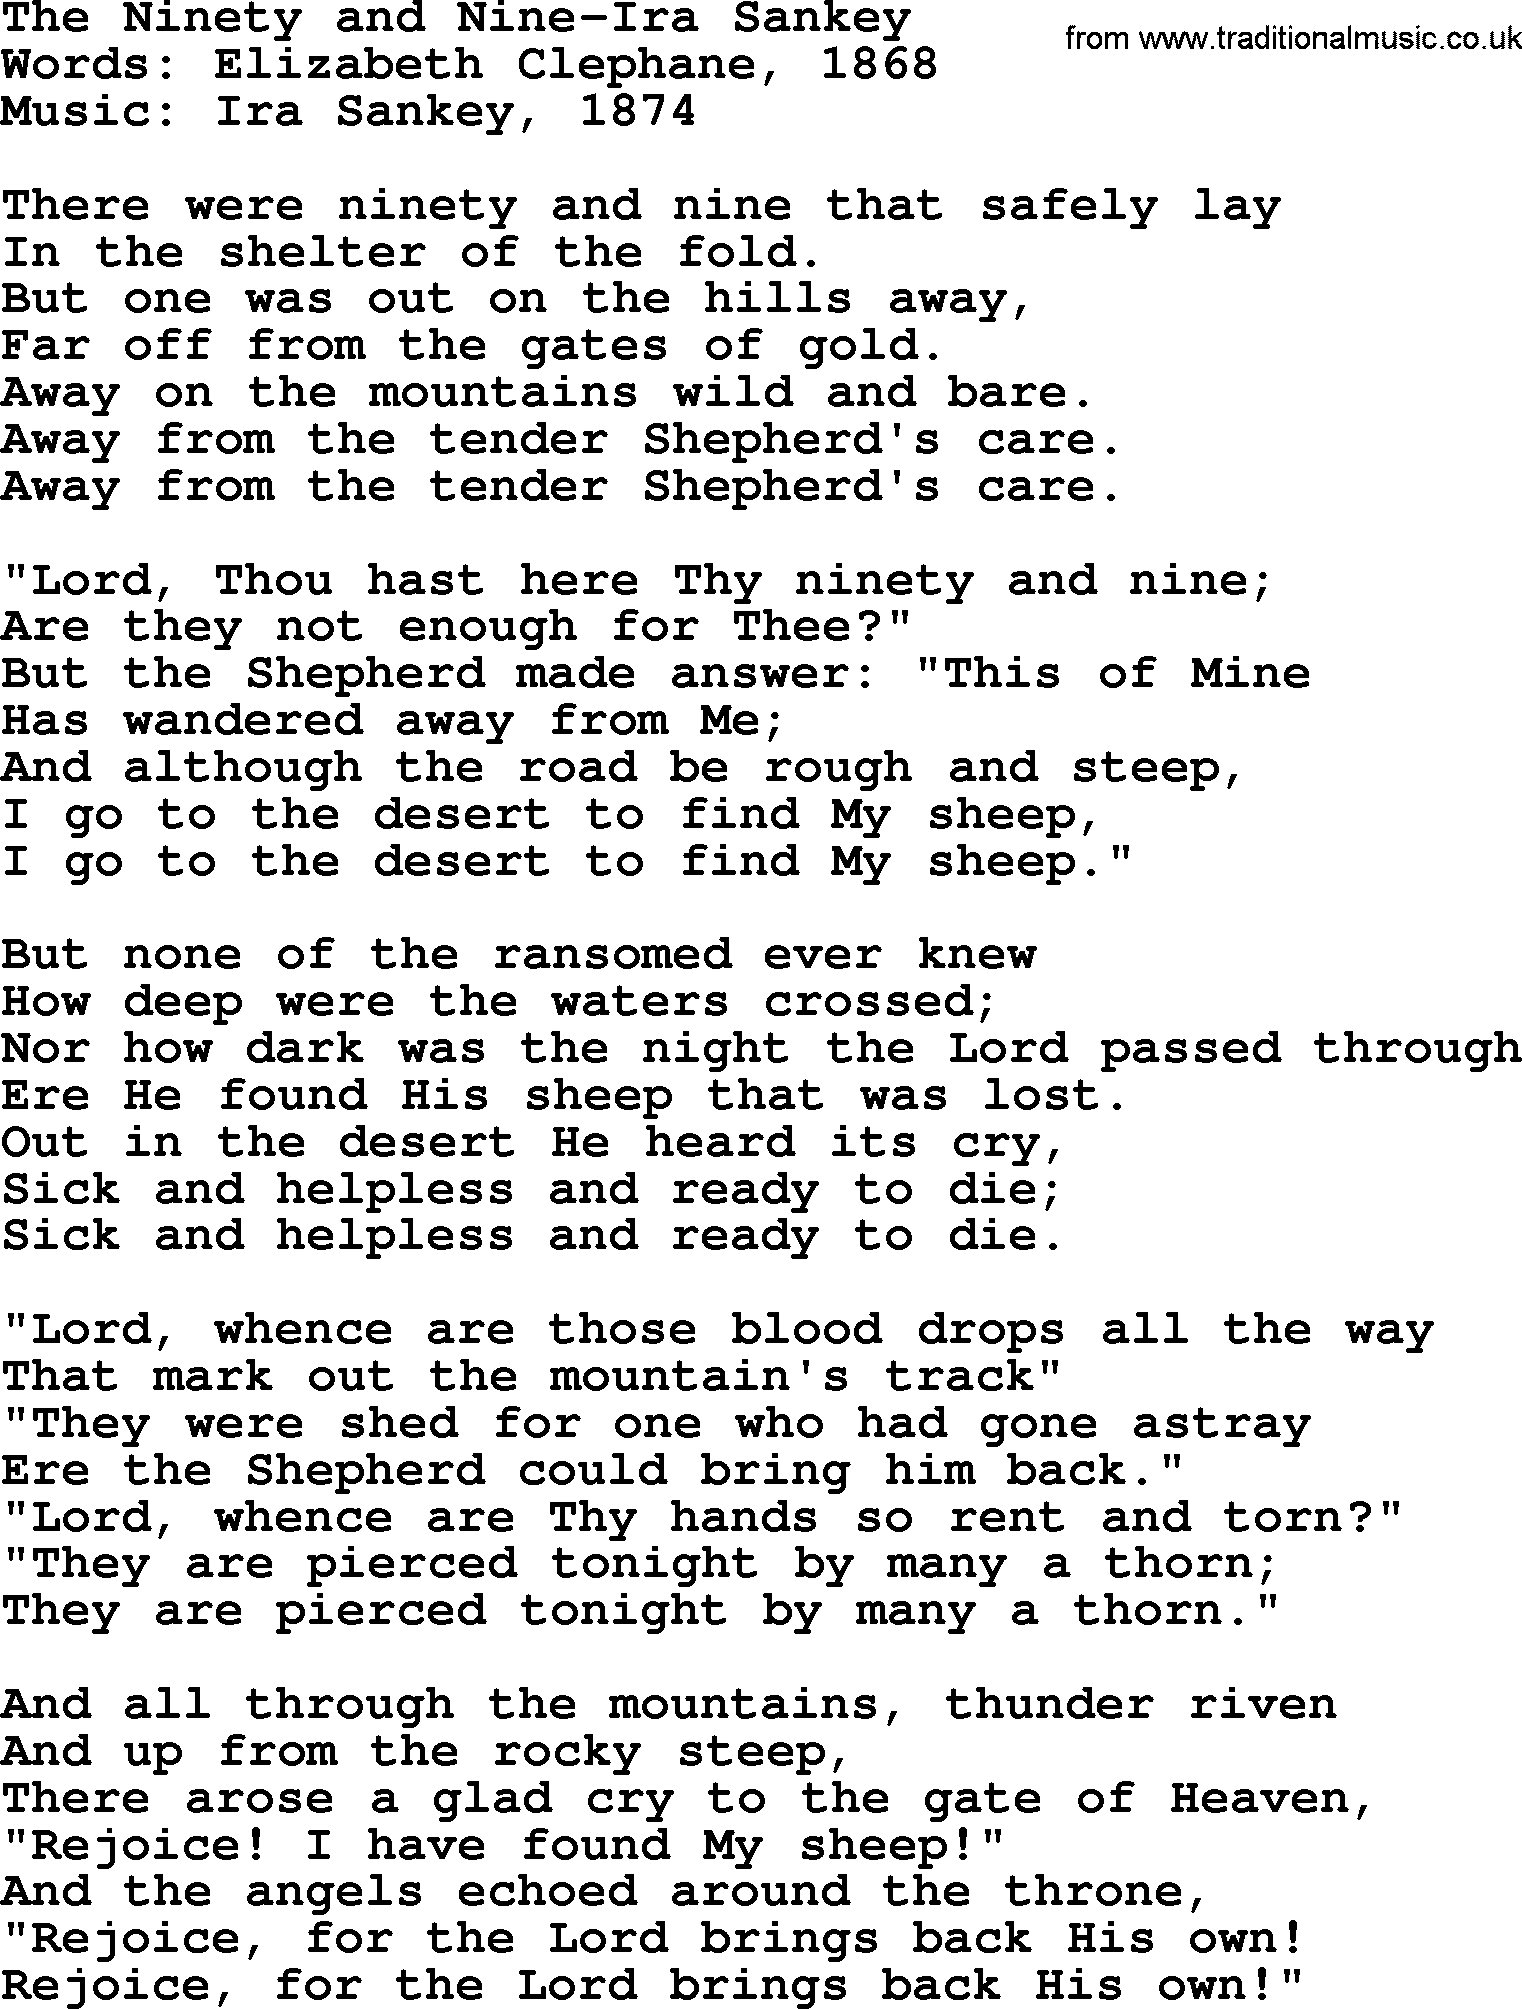 Ira Sankey hymn: The Ninety and Nine-Ira Sankey, lyrics